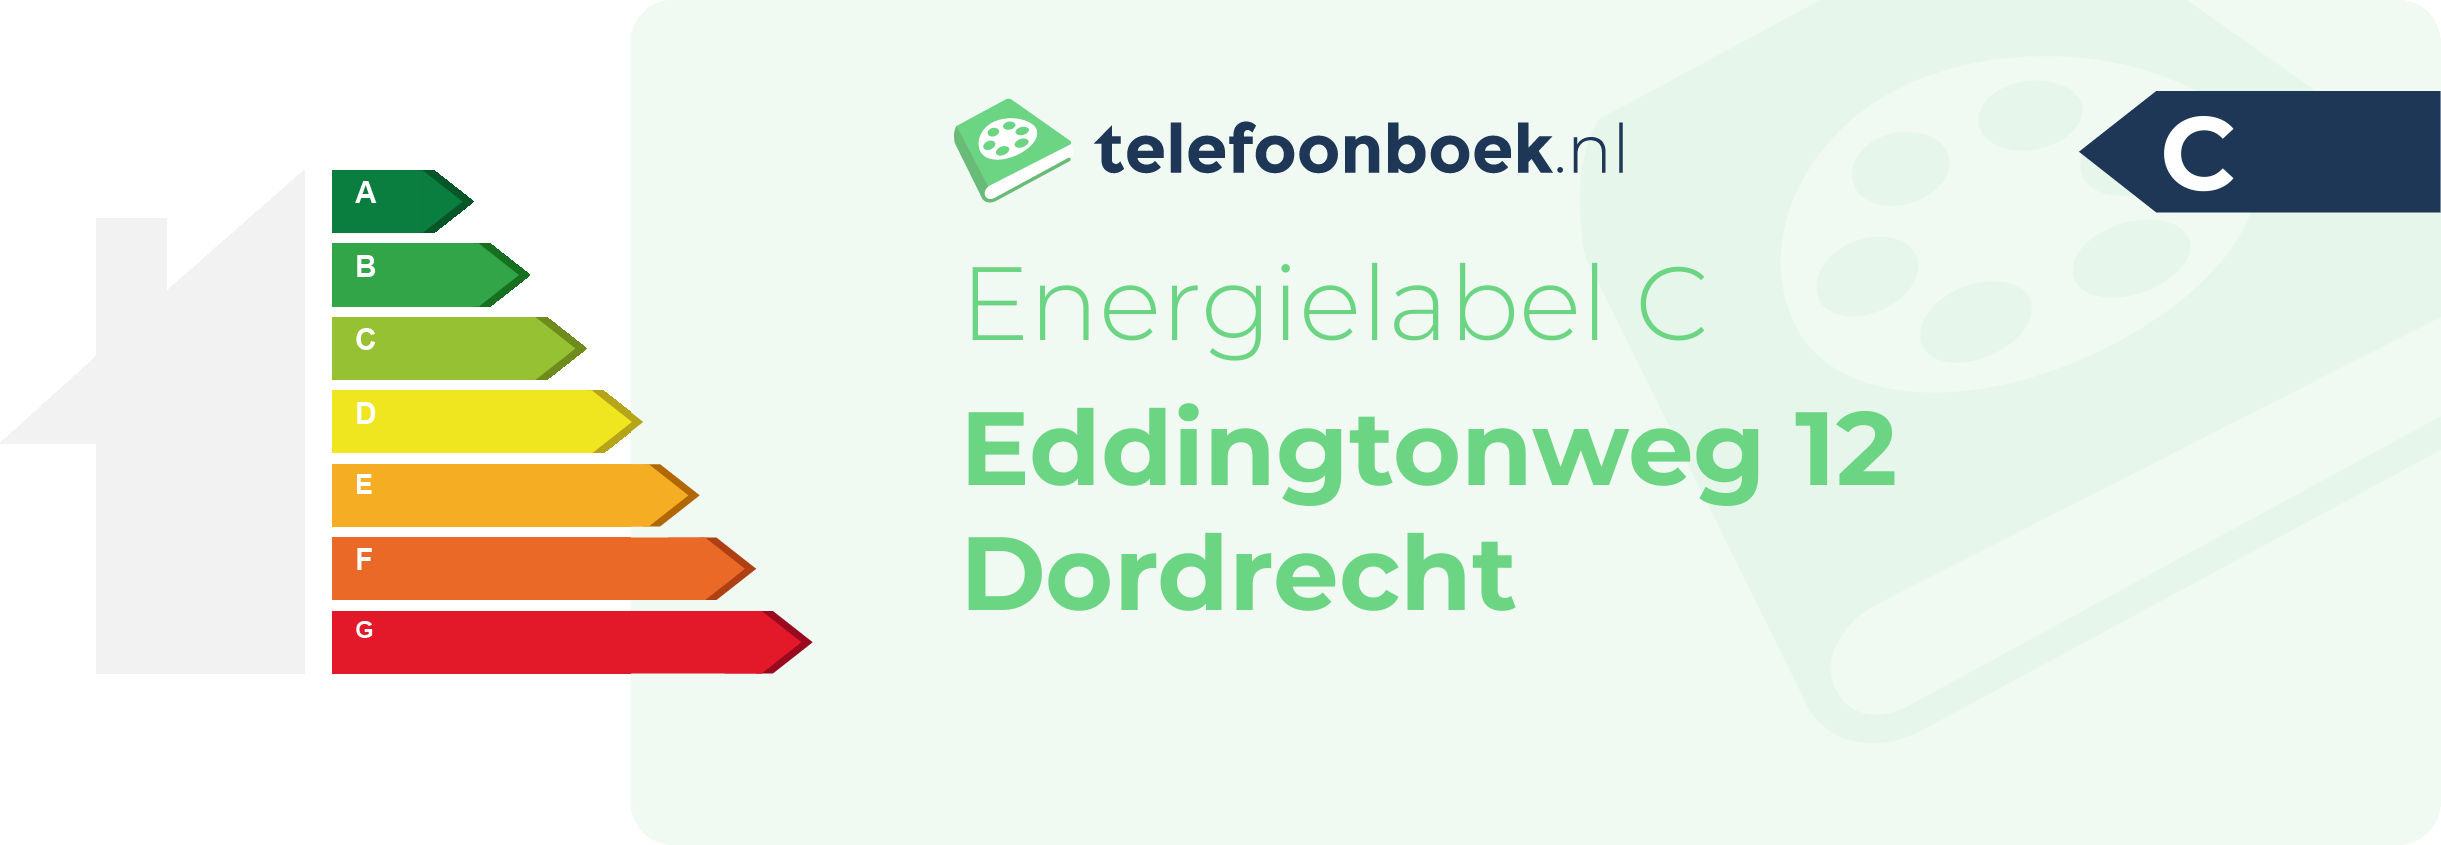 Energielabel Eddingtonweg 12 Dordrecht